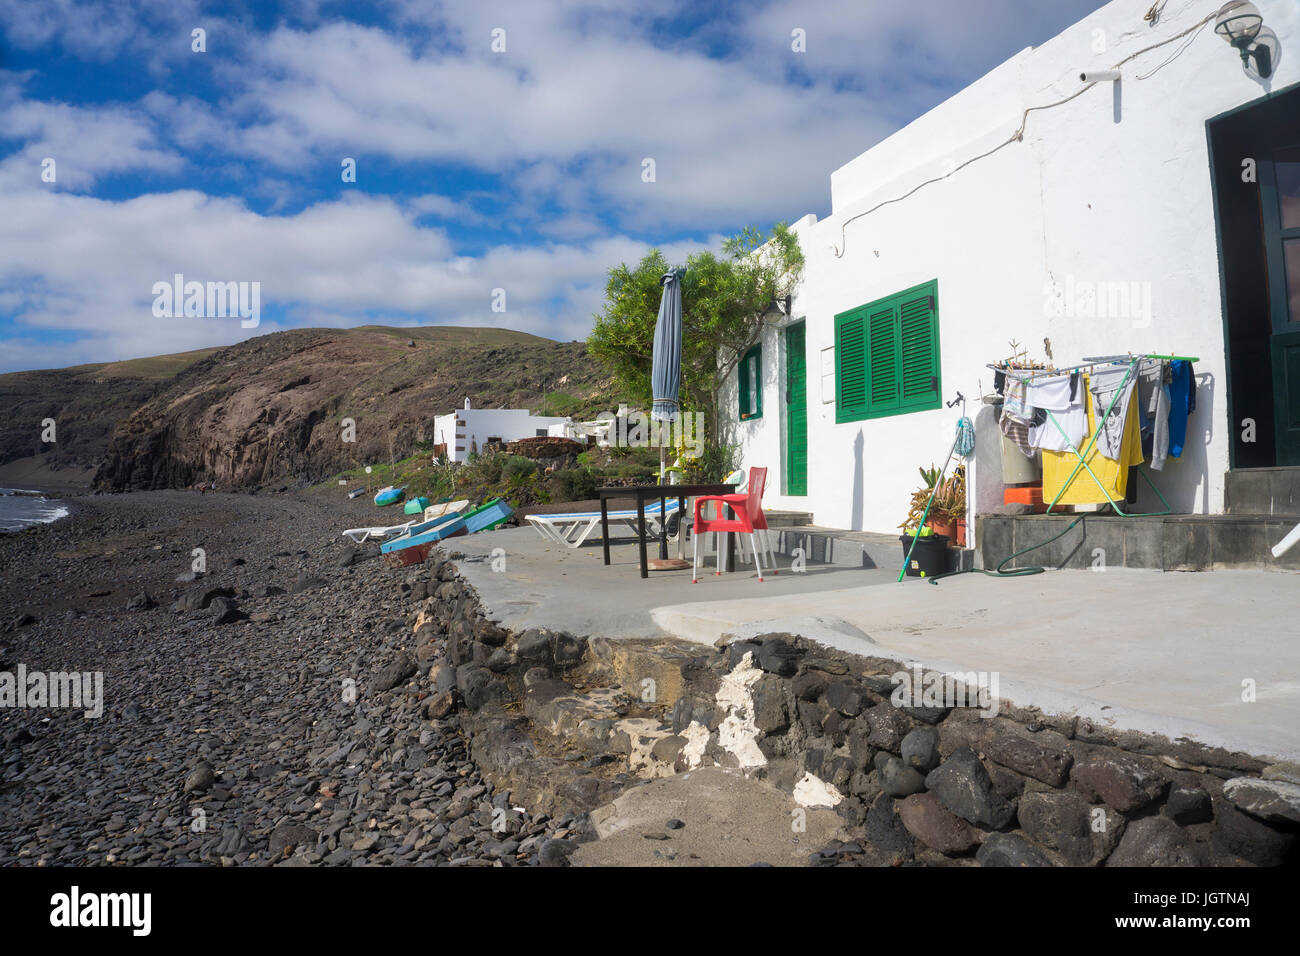 Piccola casa di pescatori con i panni appesi, la spiaggia del villaggio di pescatori Playa Quemada, Lanzarote, Isole canarie, Spagna, Europa Foto Stock